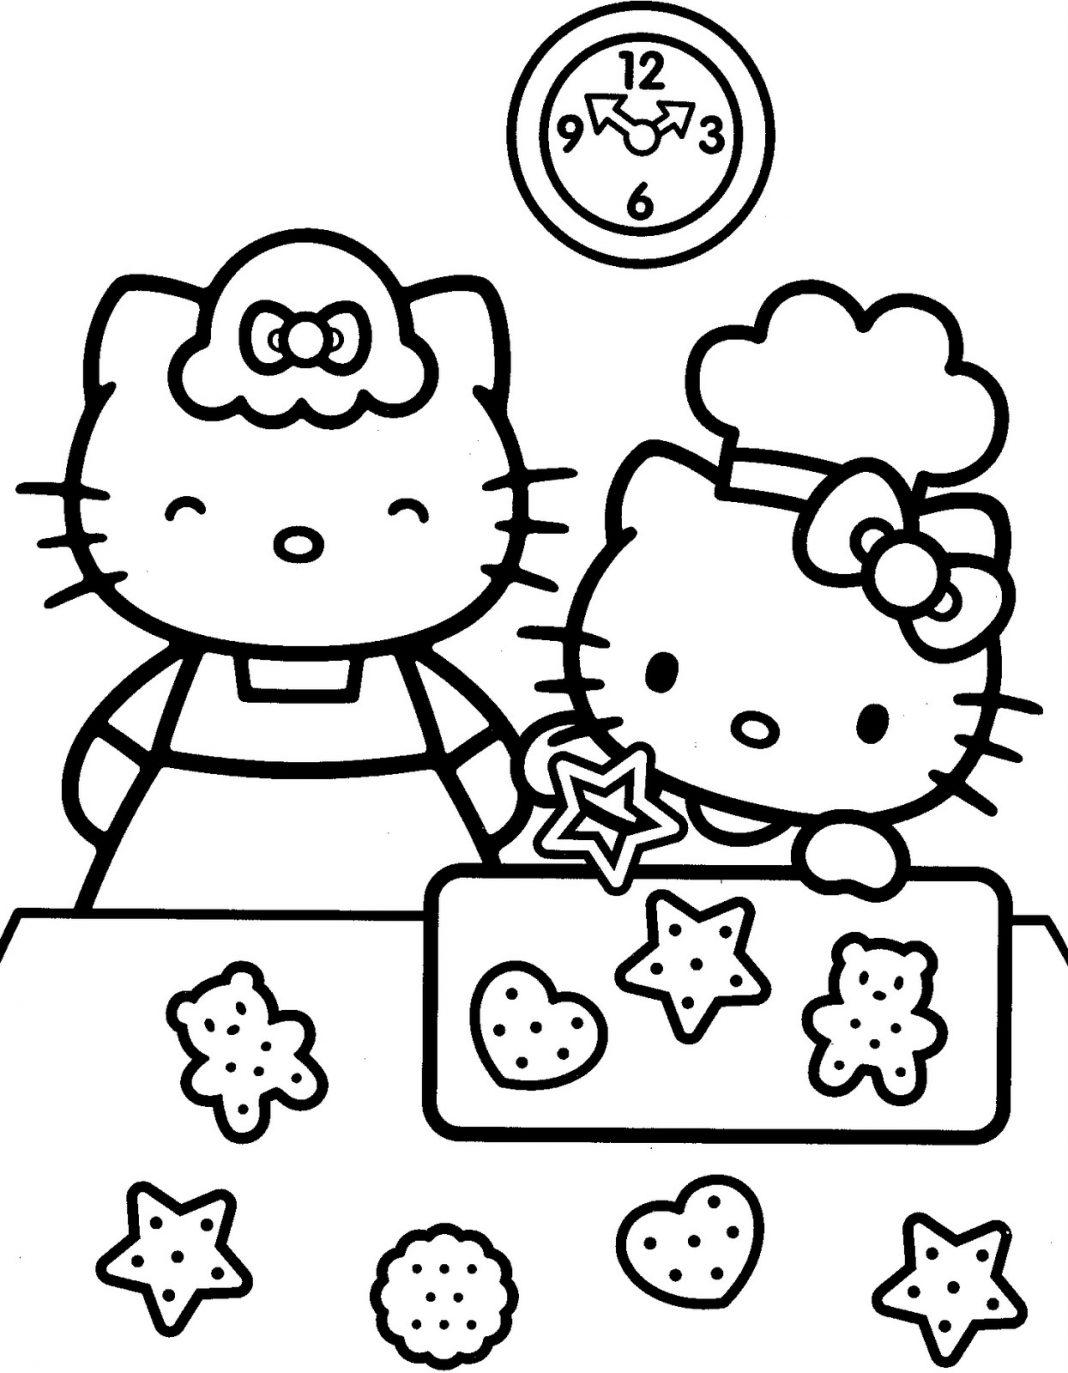 Tuyển tập mẫu tranh tô màu Hello Kitty siêu dễ thương